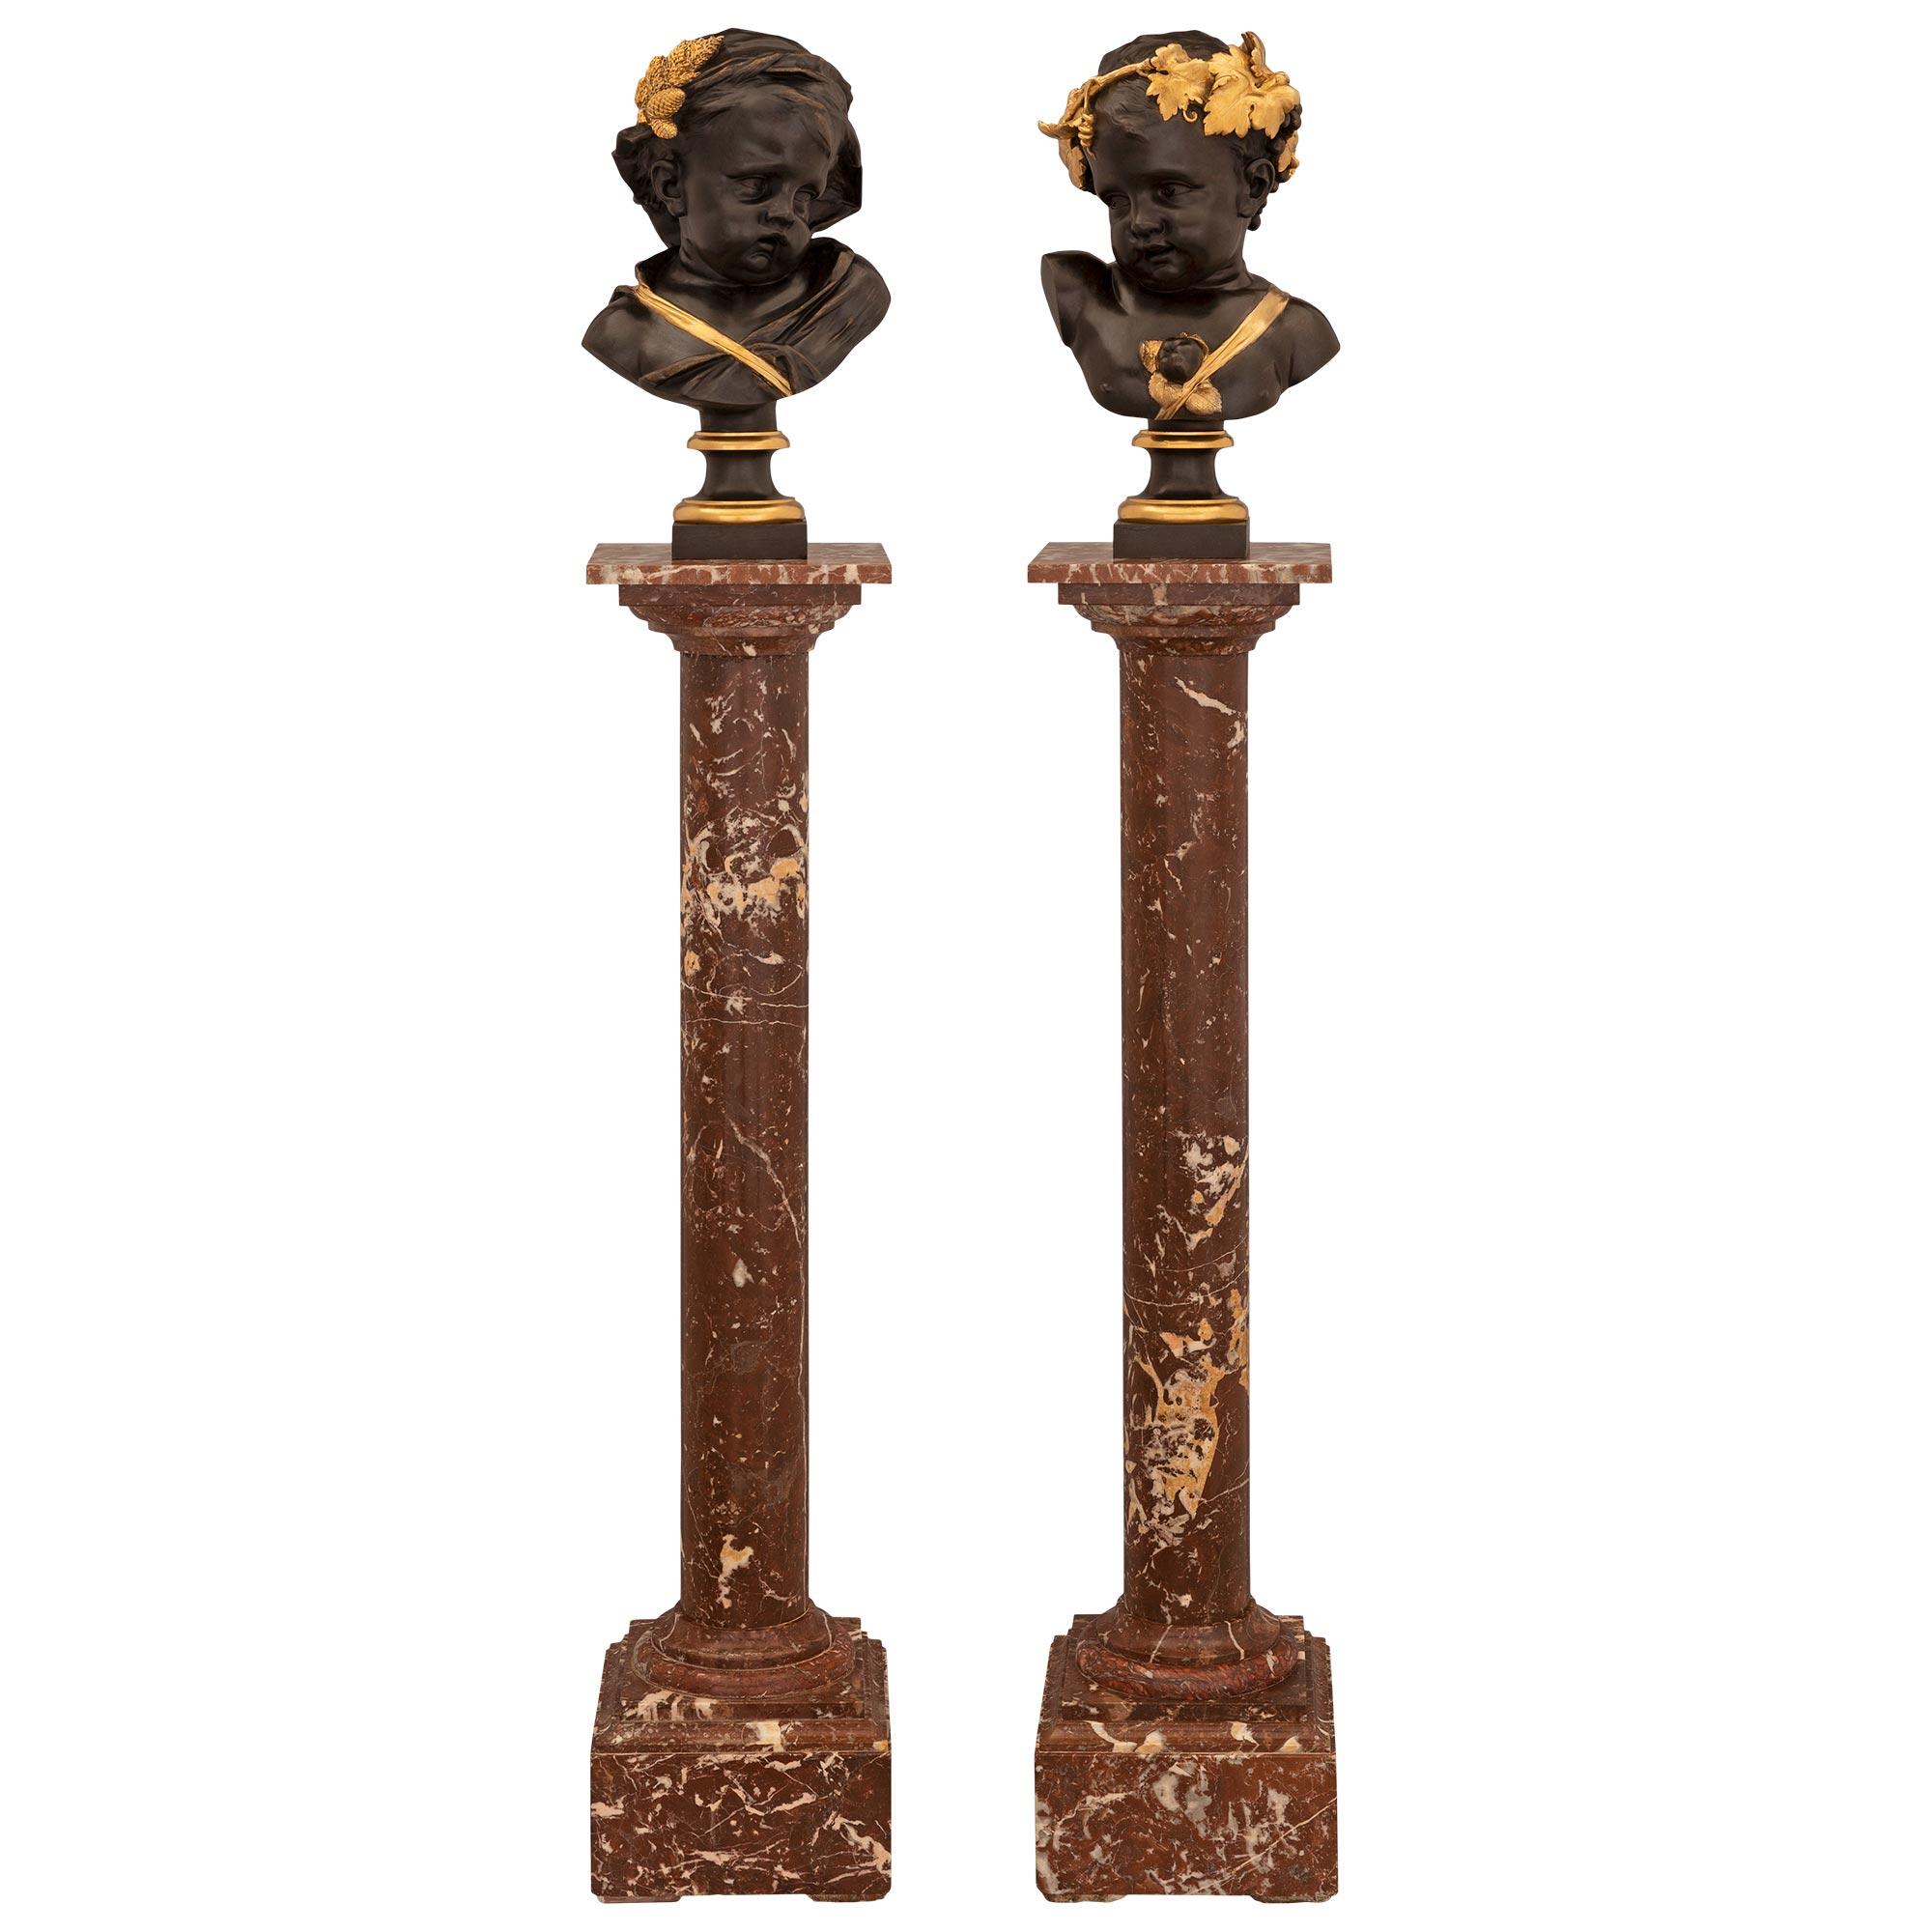 Paire de bustes de chérubins en bronze patiné et en bronze doré, datant du 19e siècle et de style Louis XVI, posés sur leur piédestal original en marbre Coquiller de Bilbao. Chaque colonne est surélevée par une base carrée avec une fine bordure